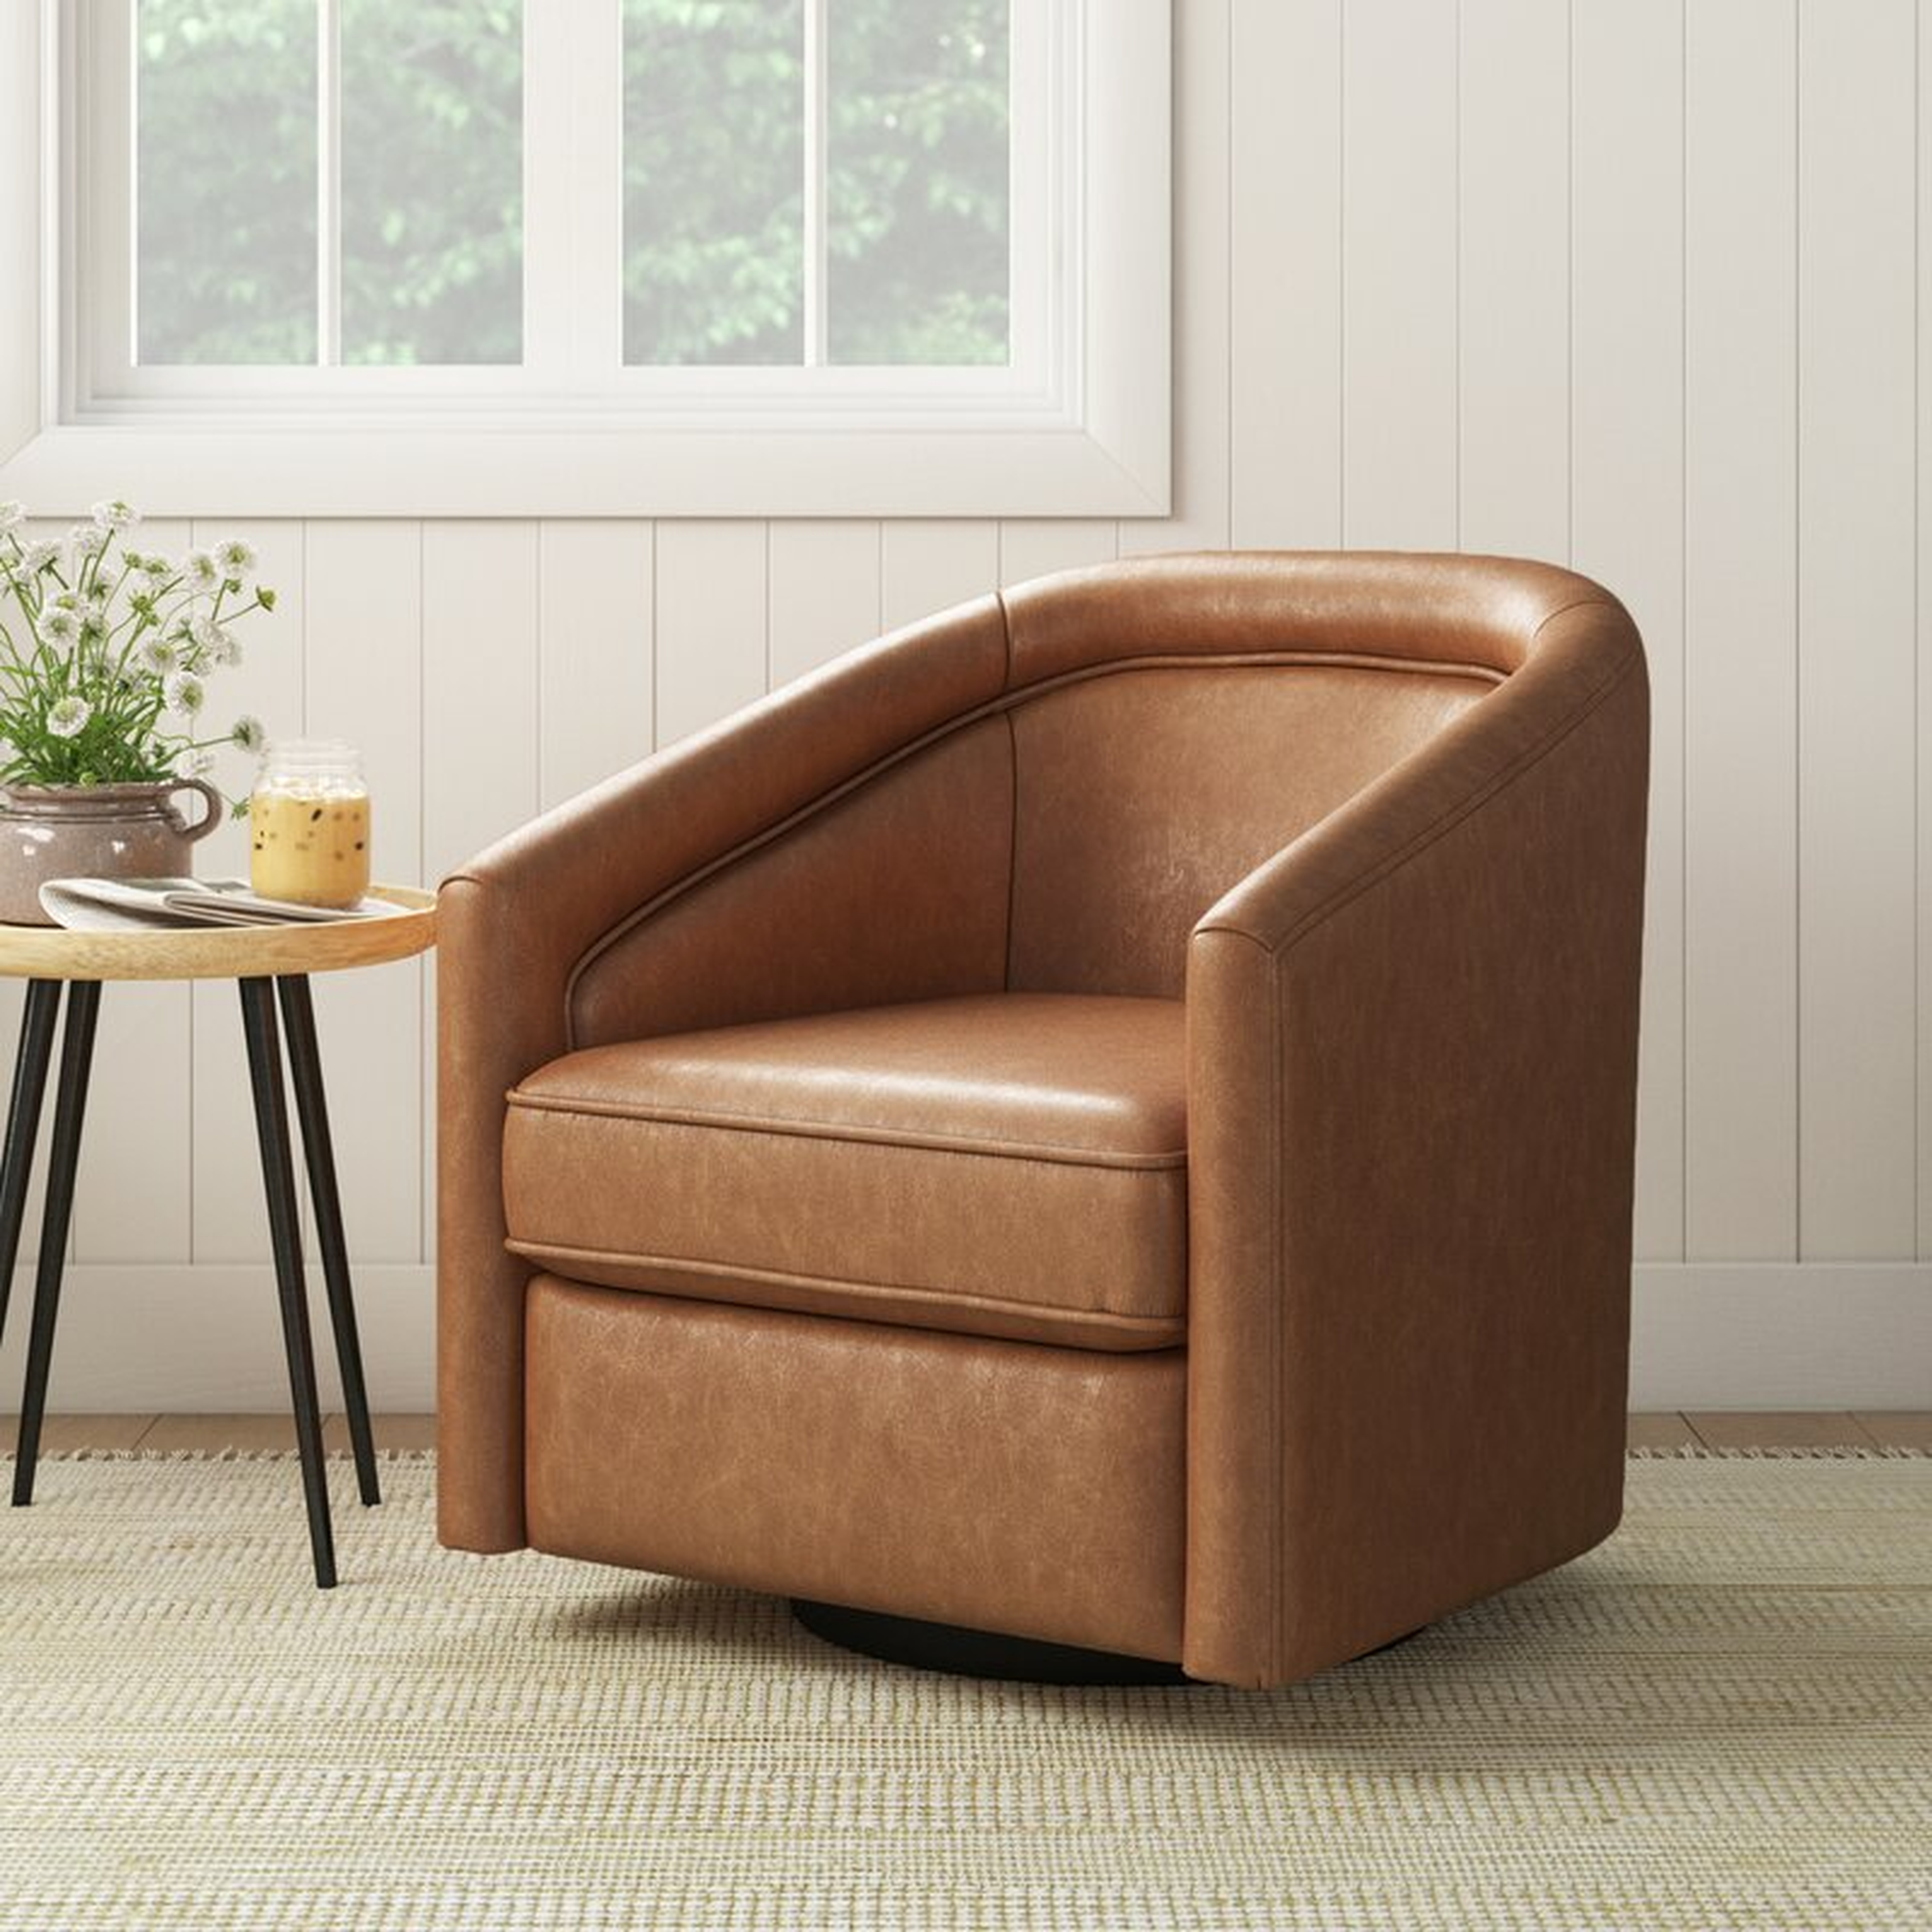 Kiersten 28.7" W Faux Leather Swivel Barrel Chair / Walnut Brown Faux Leather - Wayfair